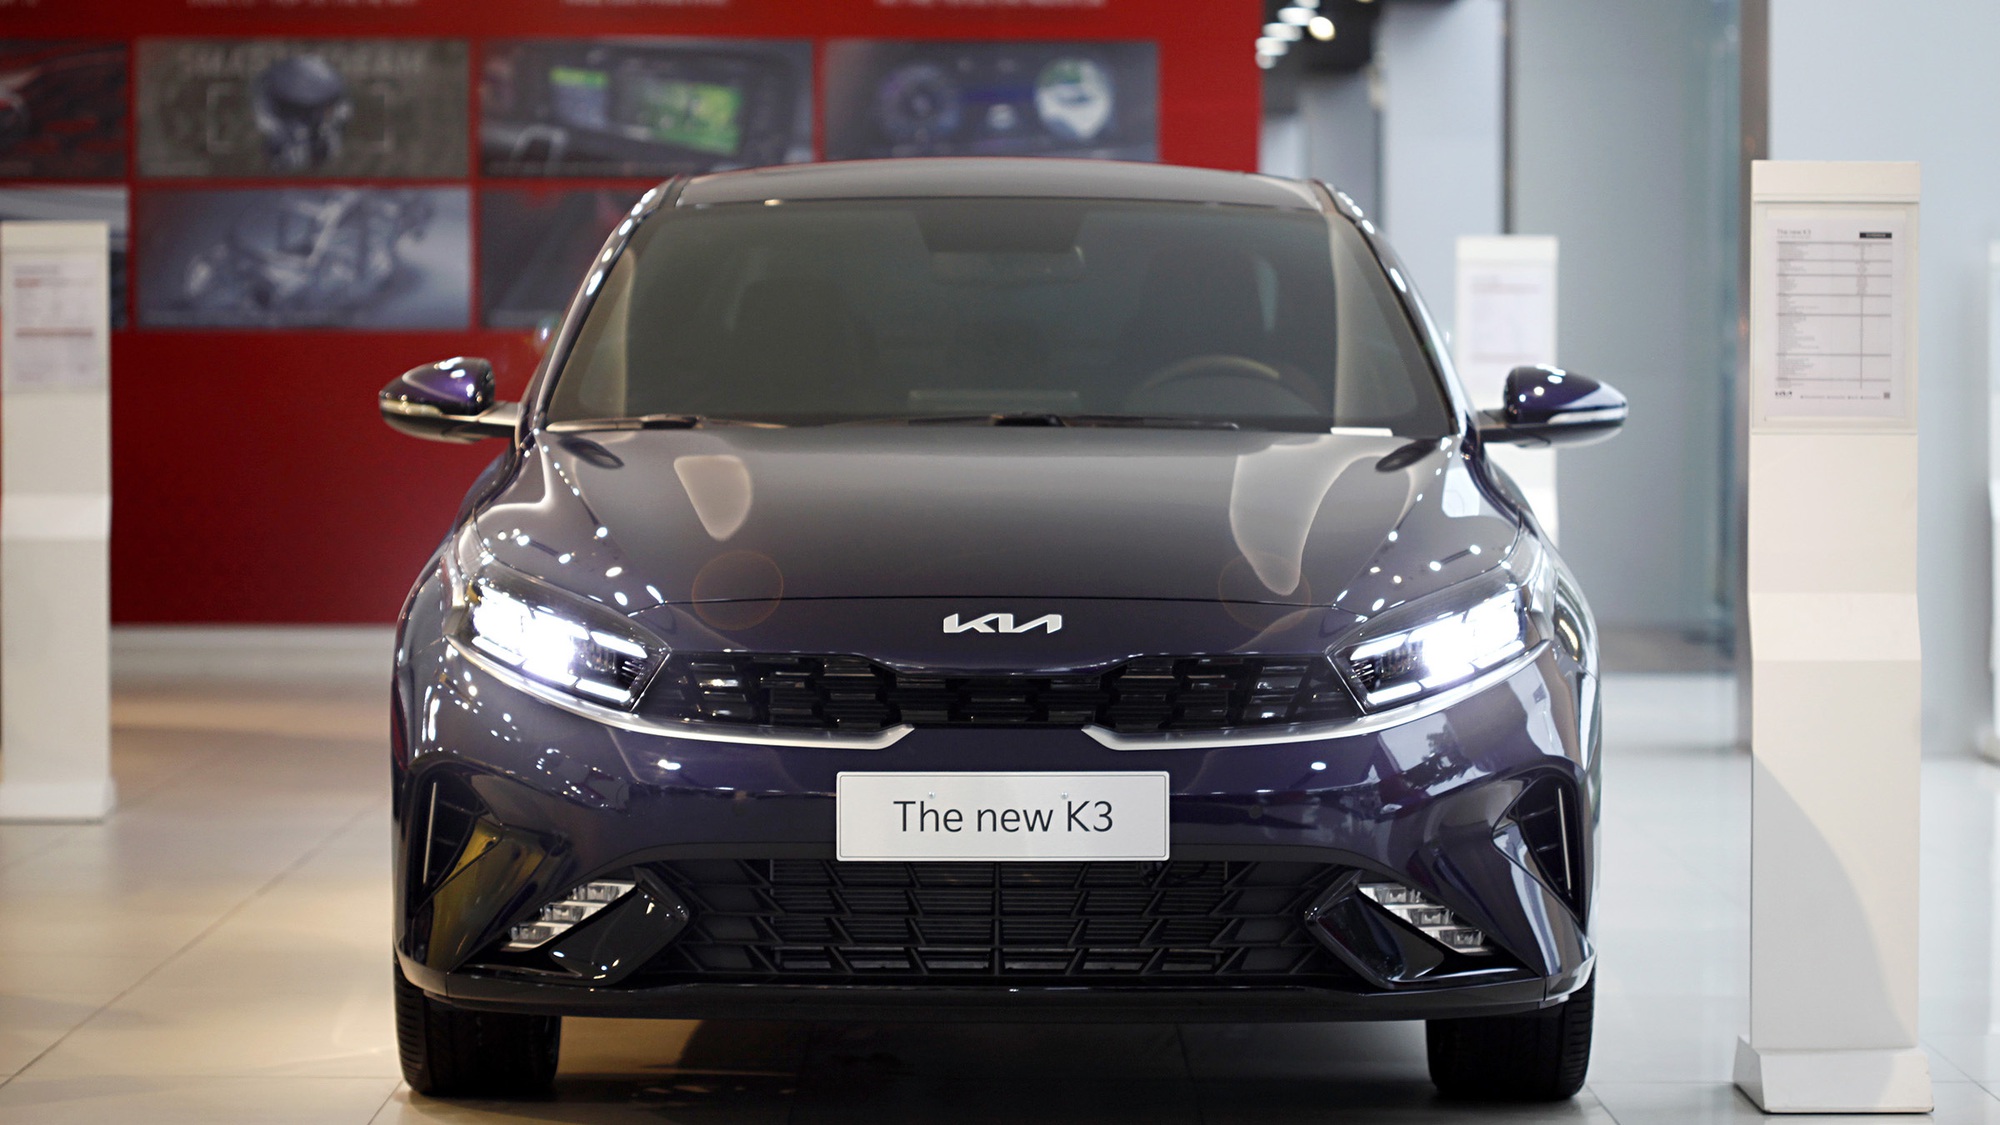 Bảng giá xe KIA tháng 9: KIA K3 được giảm giá tới 34 triệu đồng - Ảnh 1.